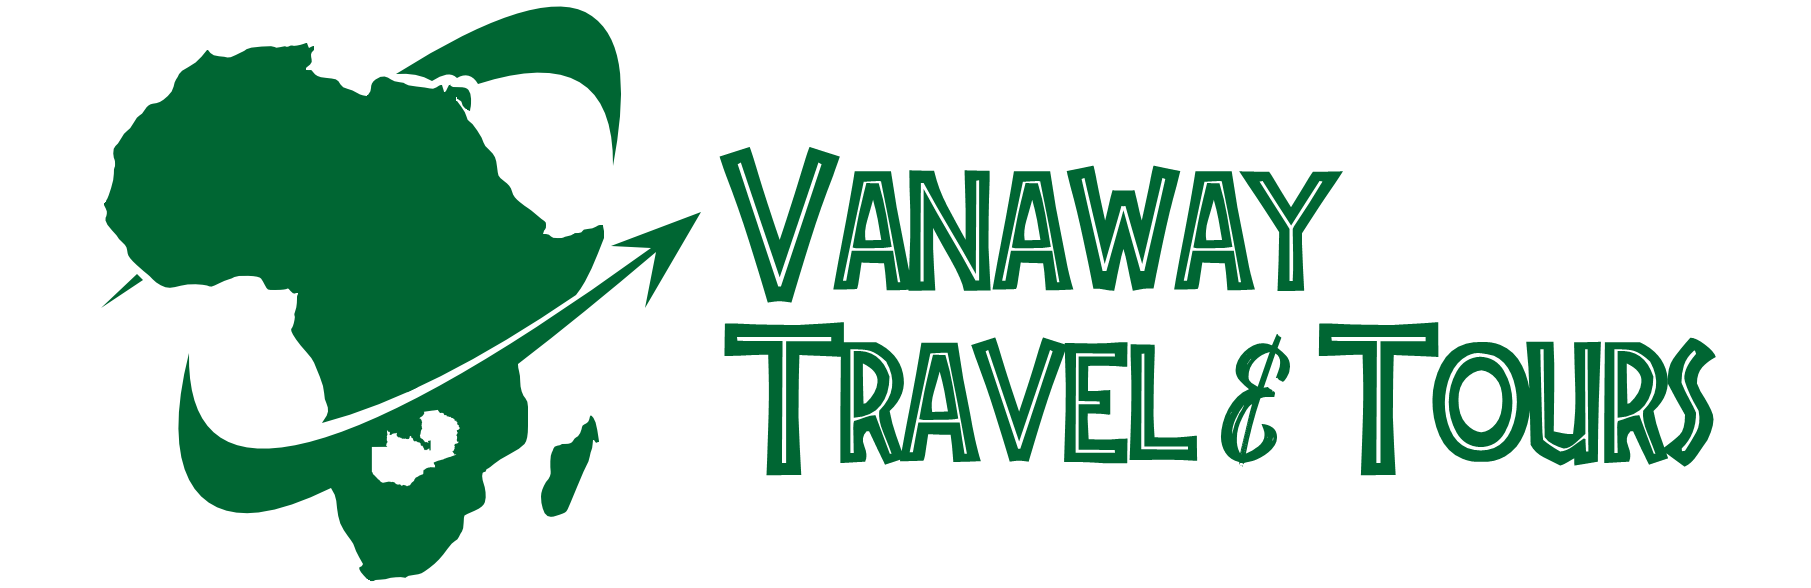 Vanaway Travel & Tours